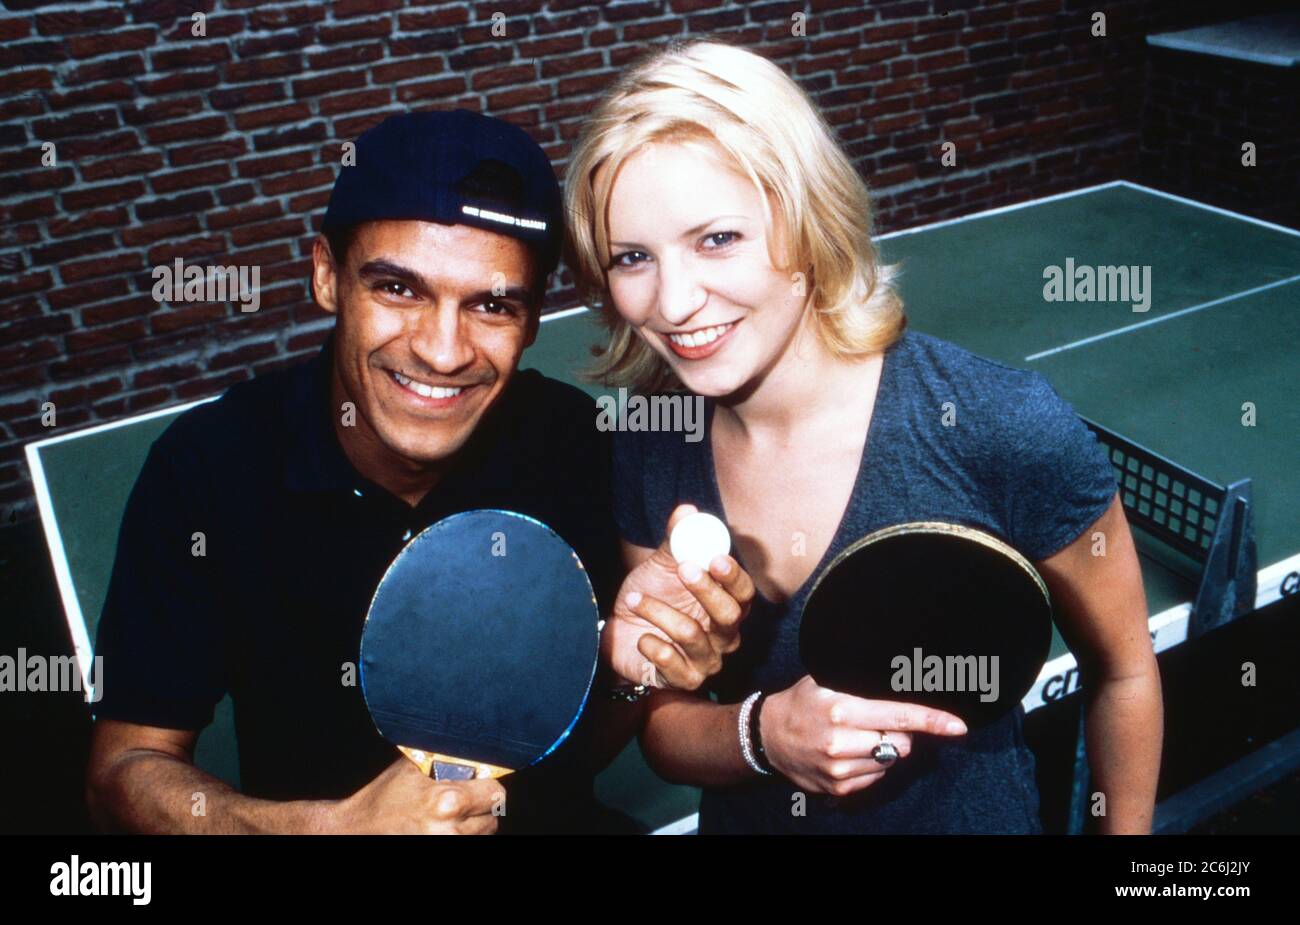 Michael Dierks und Diana Staehly, beide Schauspieler, beim Tischtennis, Deutschland 1999. Stock Photo